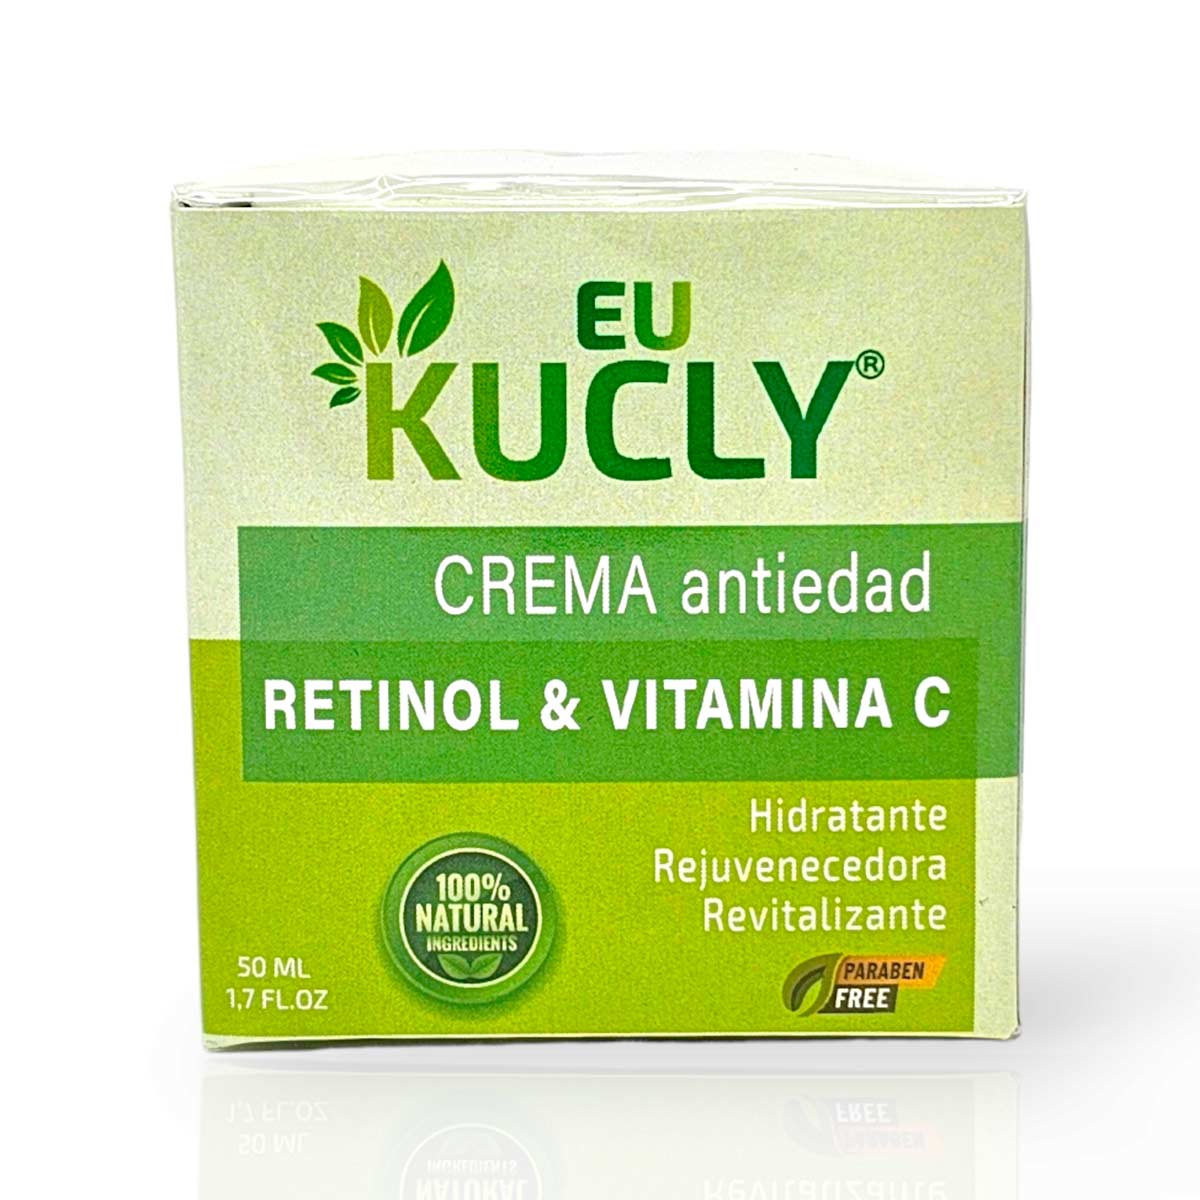 Crema-antiedad-retinol-y-vitamina-c-eukucly